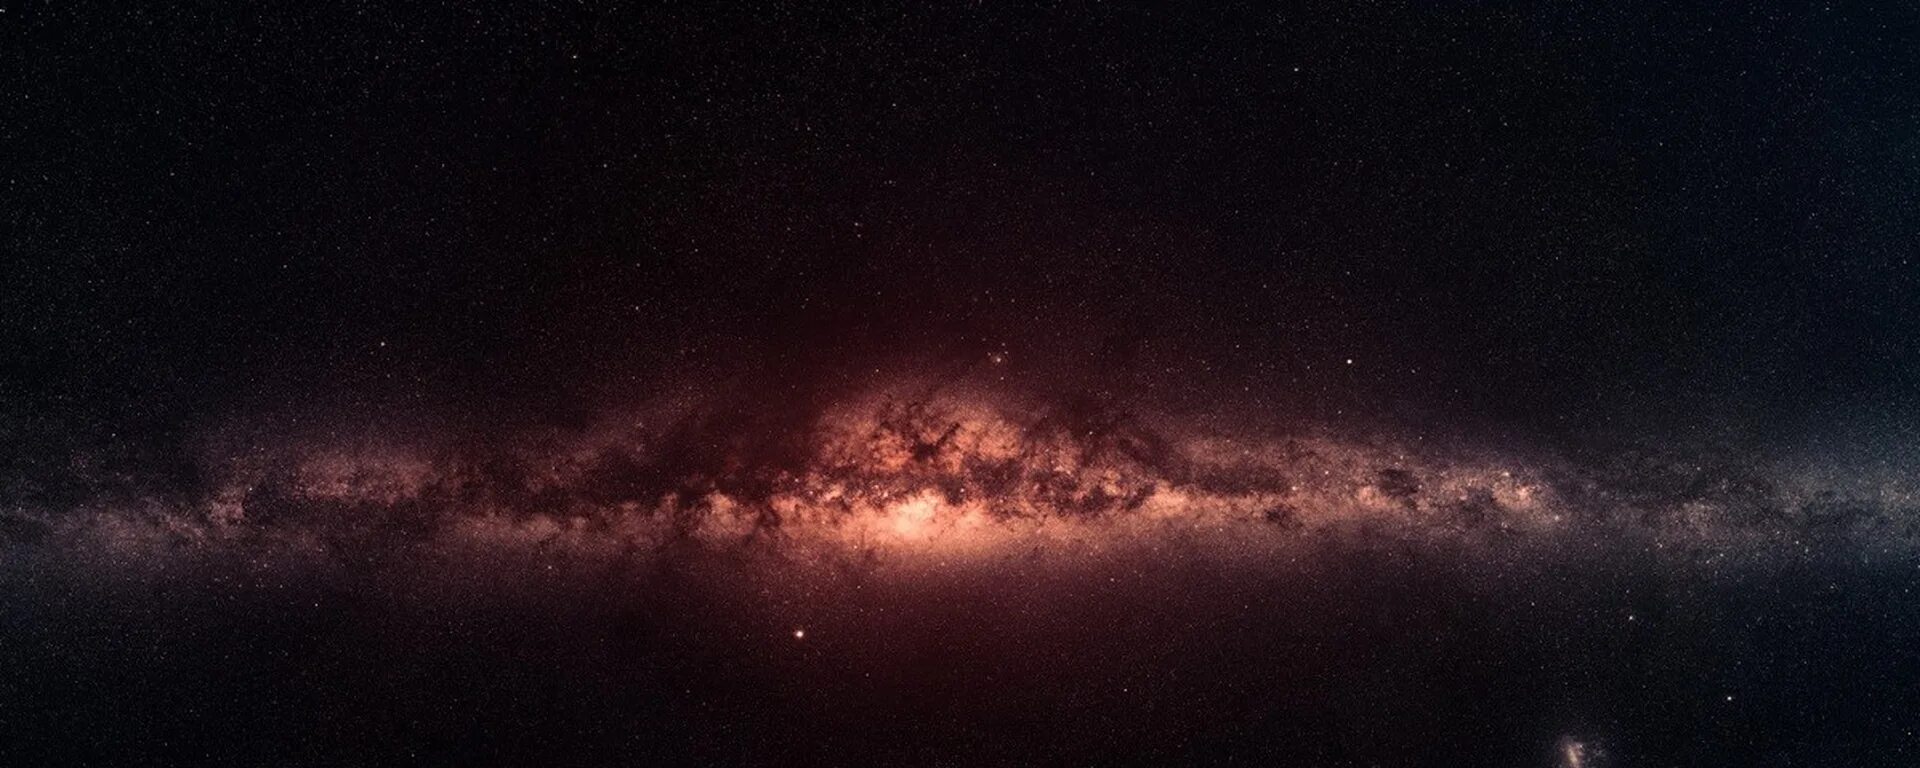 Где центр галактики. Центр Галактики Млечный путь. Центр Галактики Млечный путь фото. Центр Галактики Млечный путь в инфракрасном. Ядро Галактики Млечный путь.